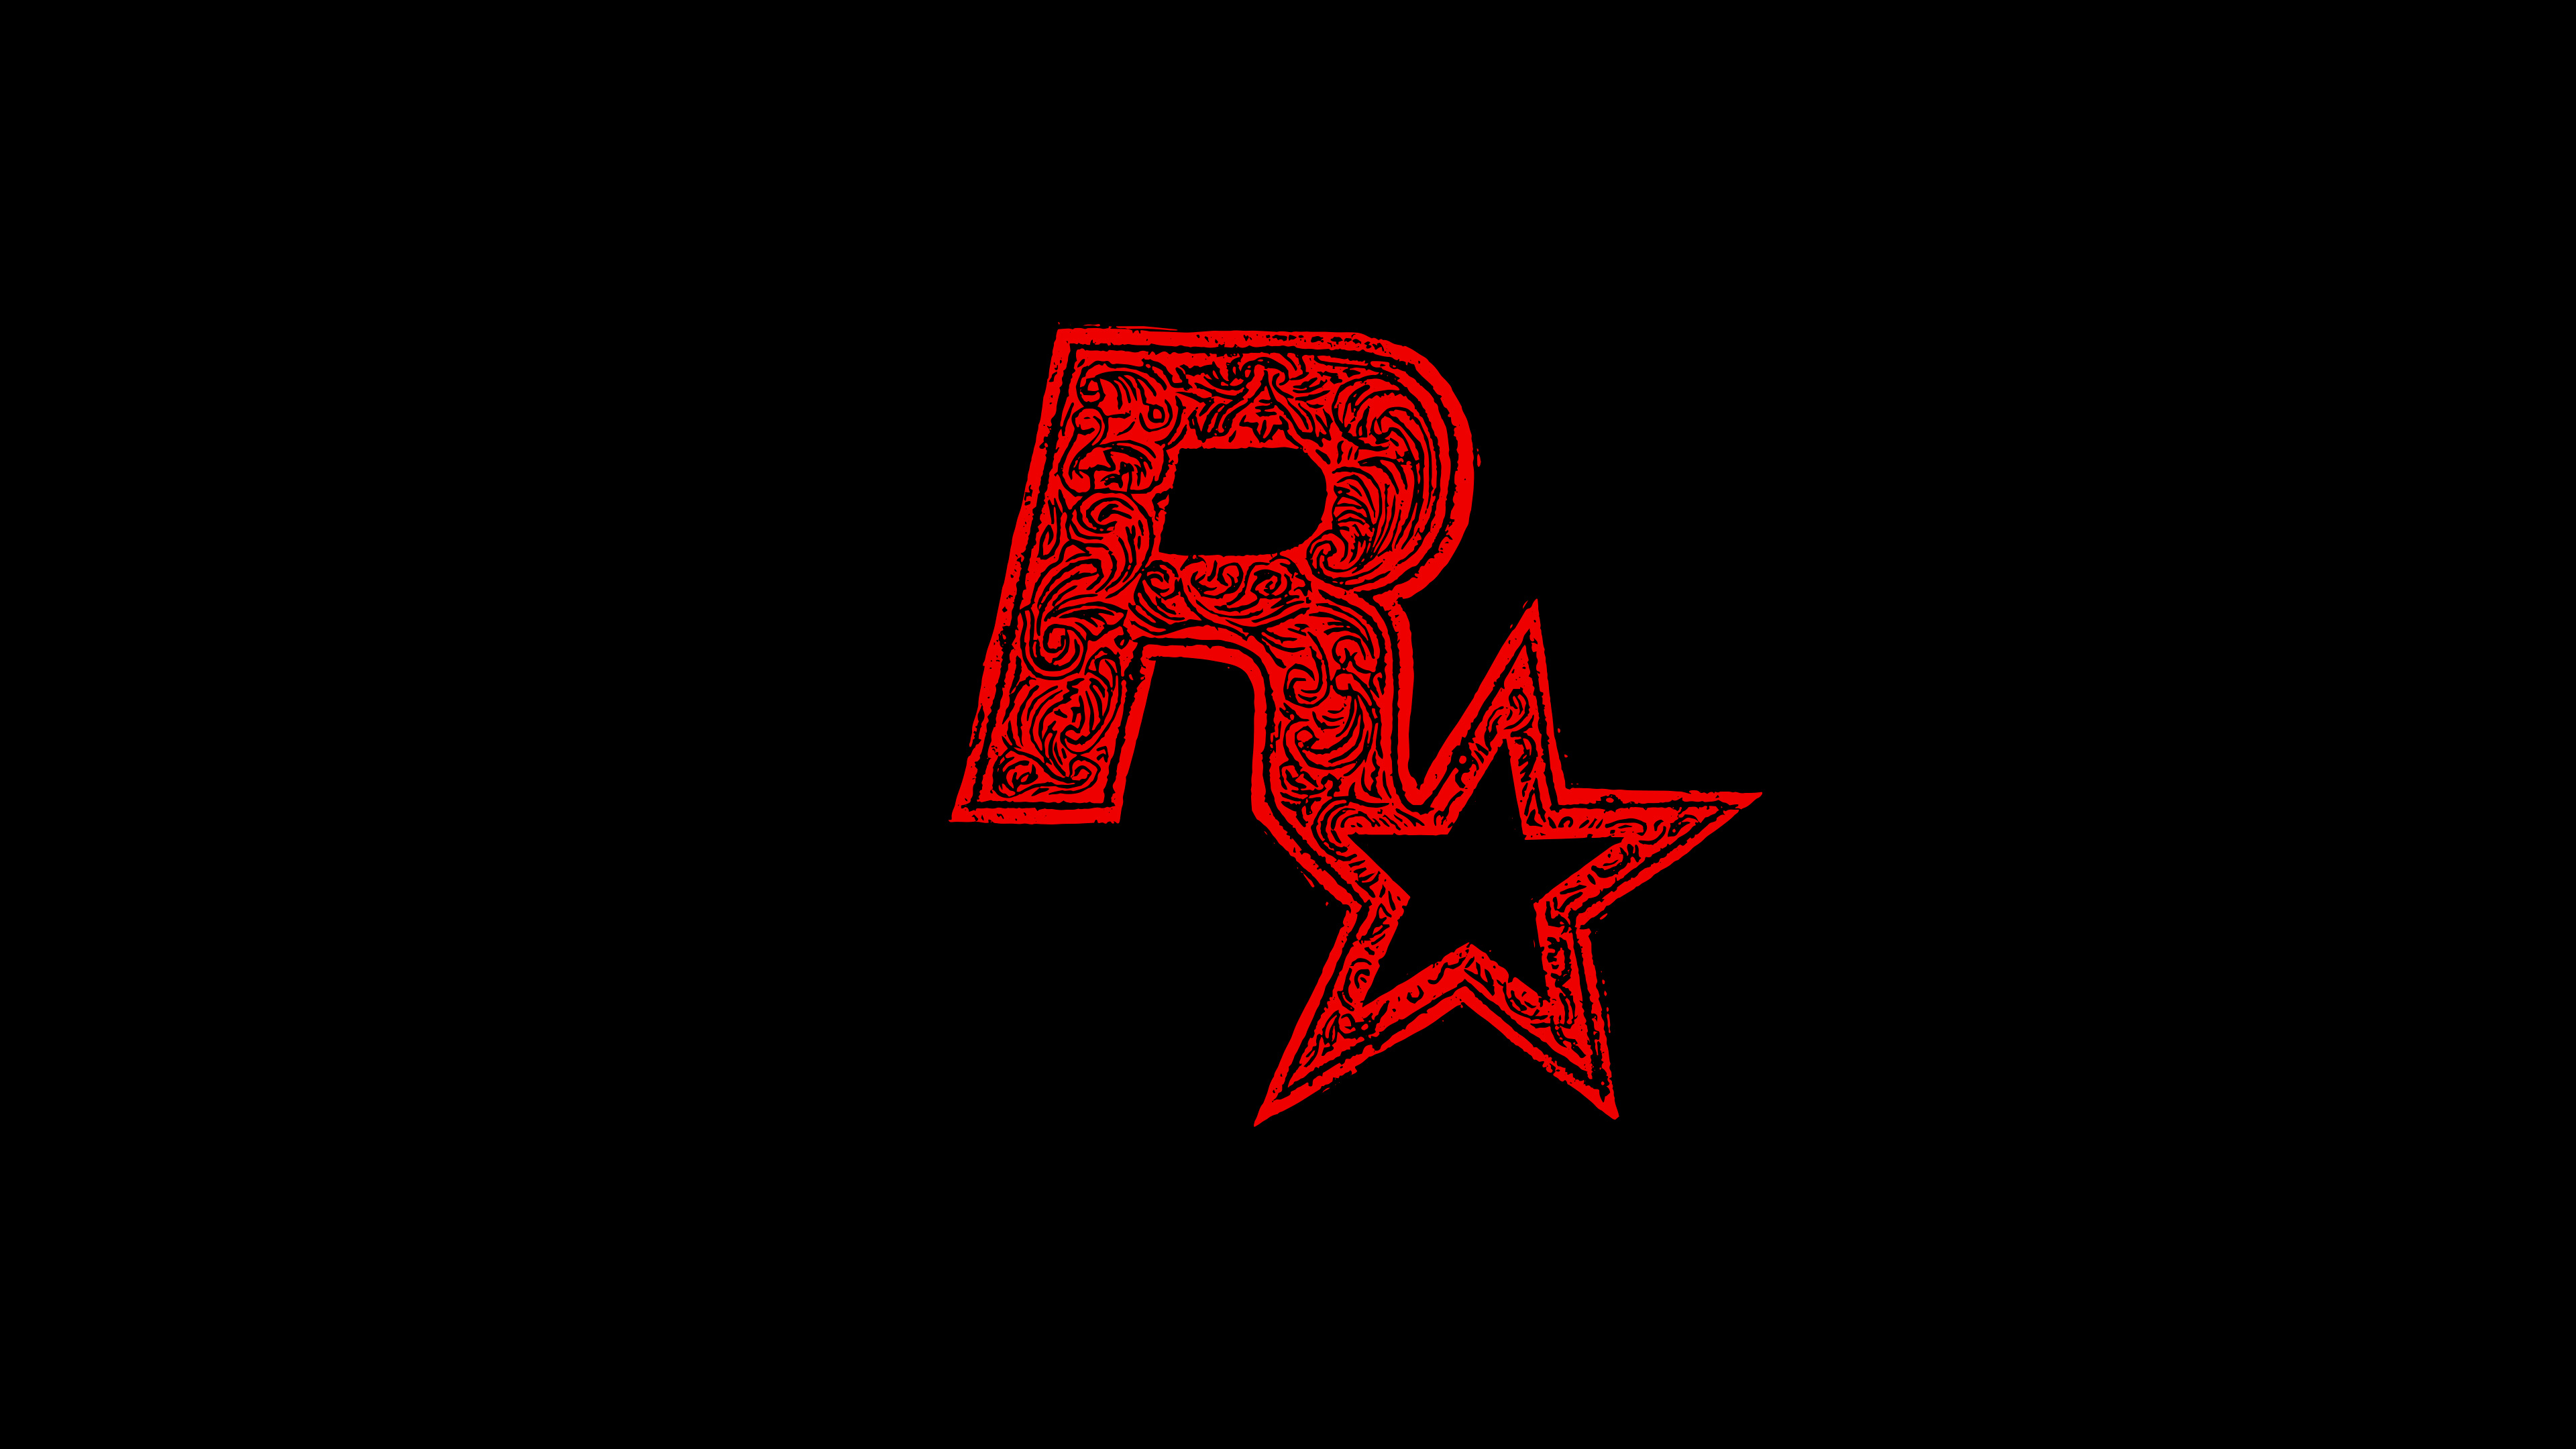 Лайк э рок стар. Картинка рокстар. Логотип рокстар. Игры Rockstar. Обои рокстар.